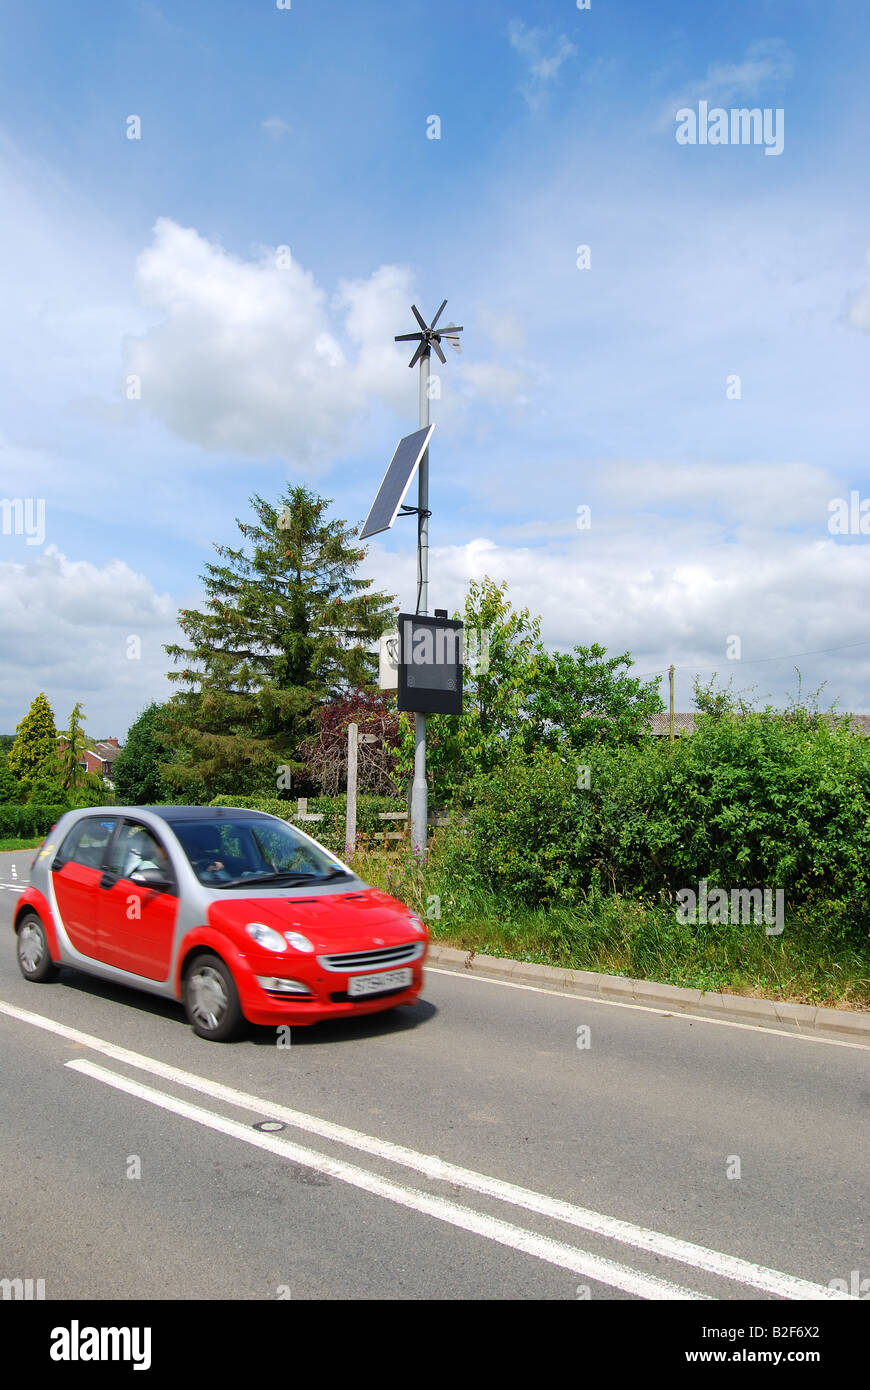 Indicador de velocidad en carretera con turbina de viento y paneles solares, A46 road, Warwickshire, Inglaterra, Reino Unido Foto de stock